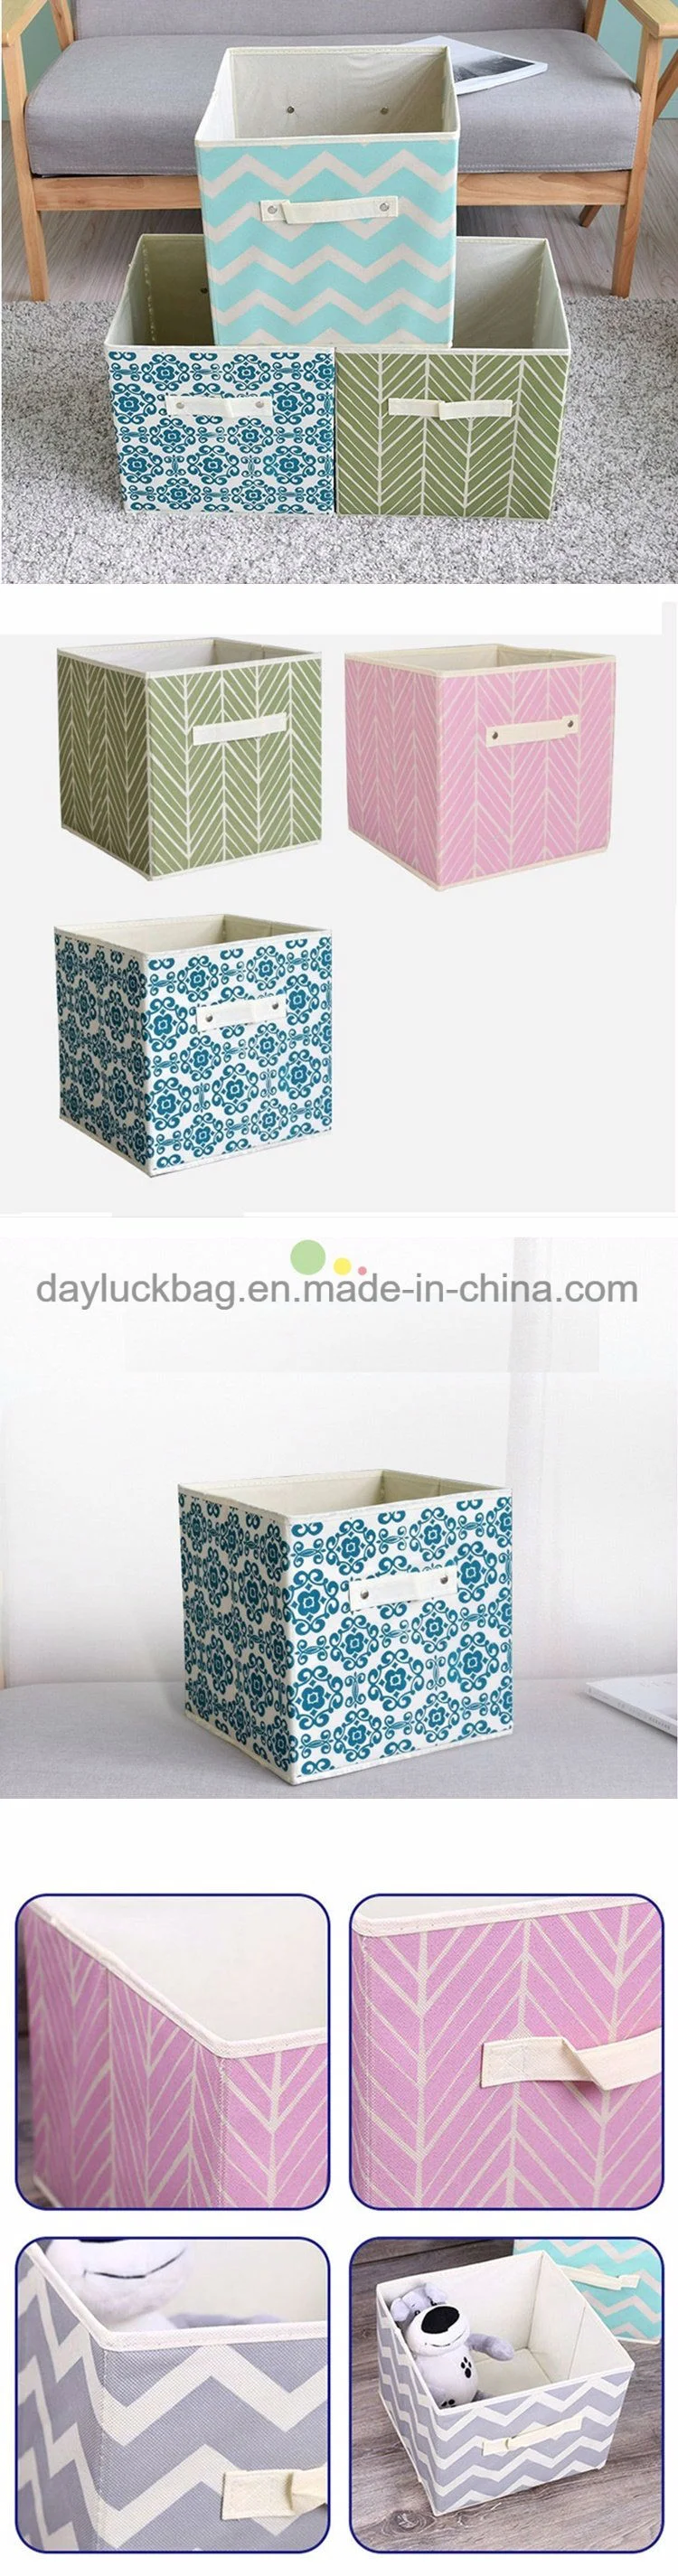 OEM Custom Made Fabric Toy Storage Bins for Kids Toy Storage Organizer Cube Box